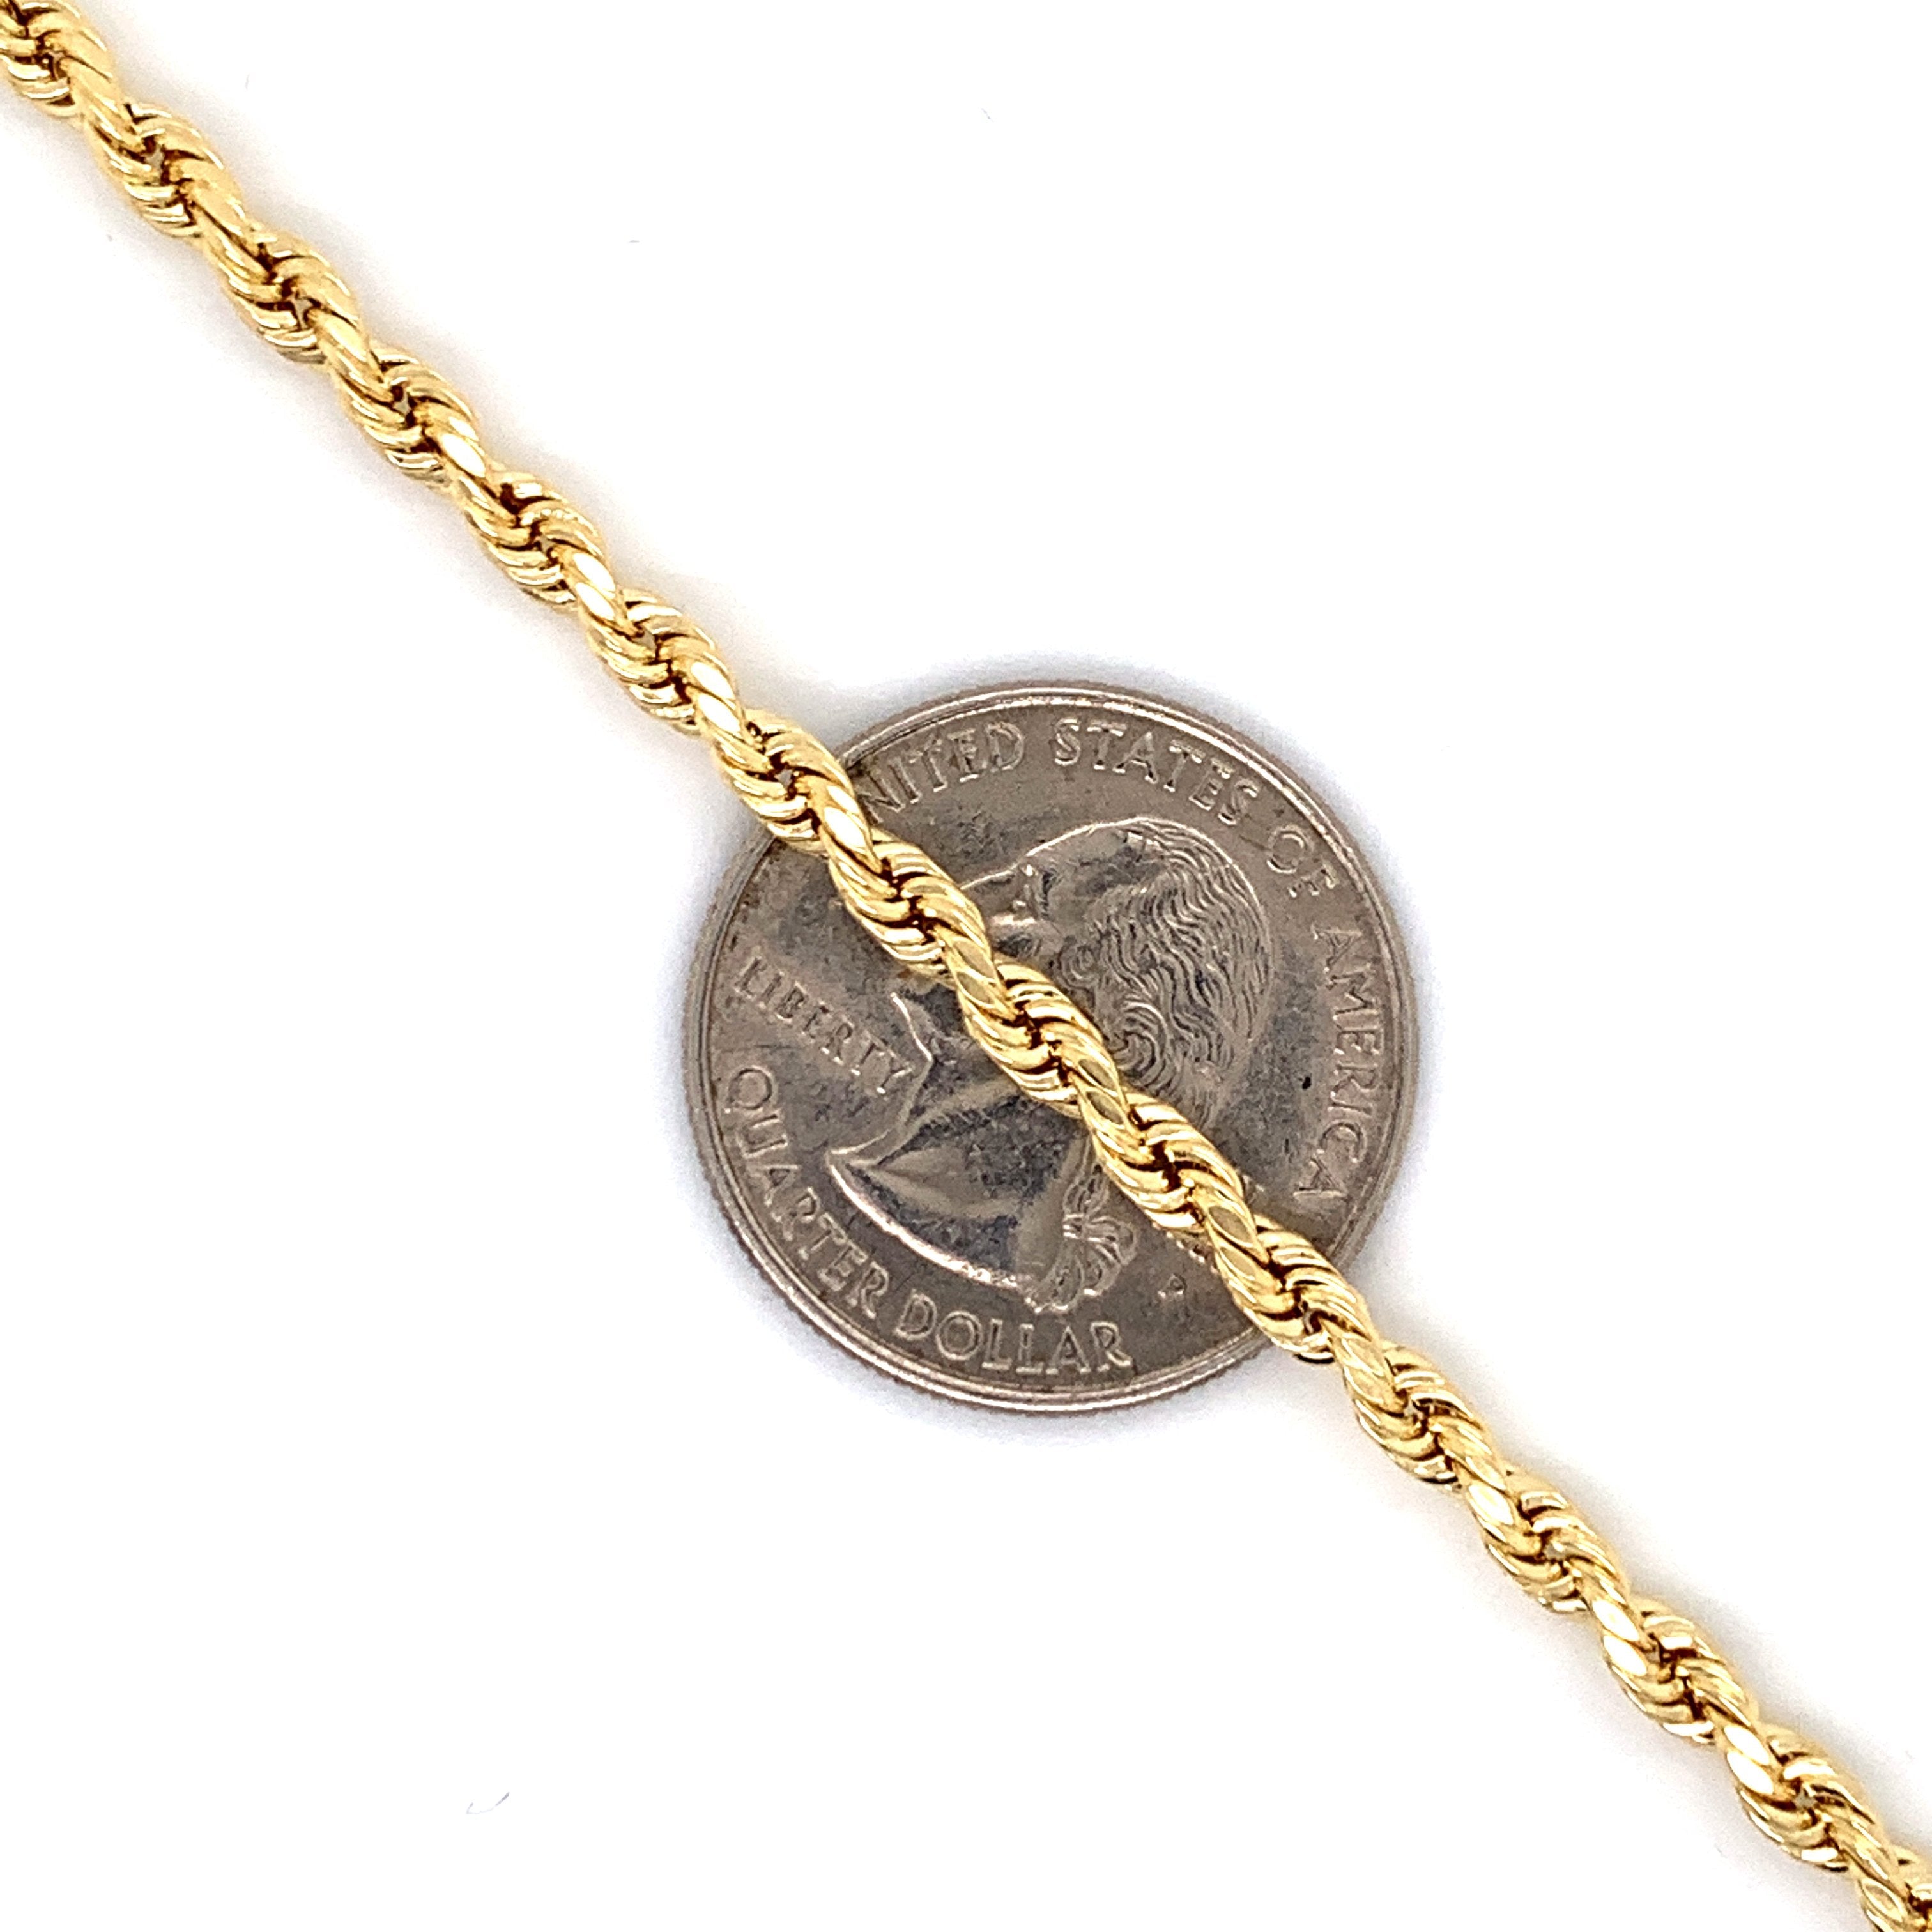 10K Gold Rope Chain (Regular)- 2.5mm - White Carat Diamonds 